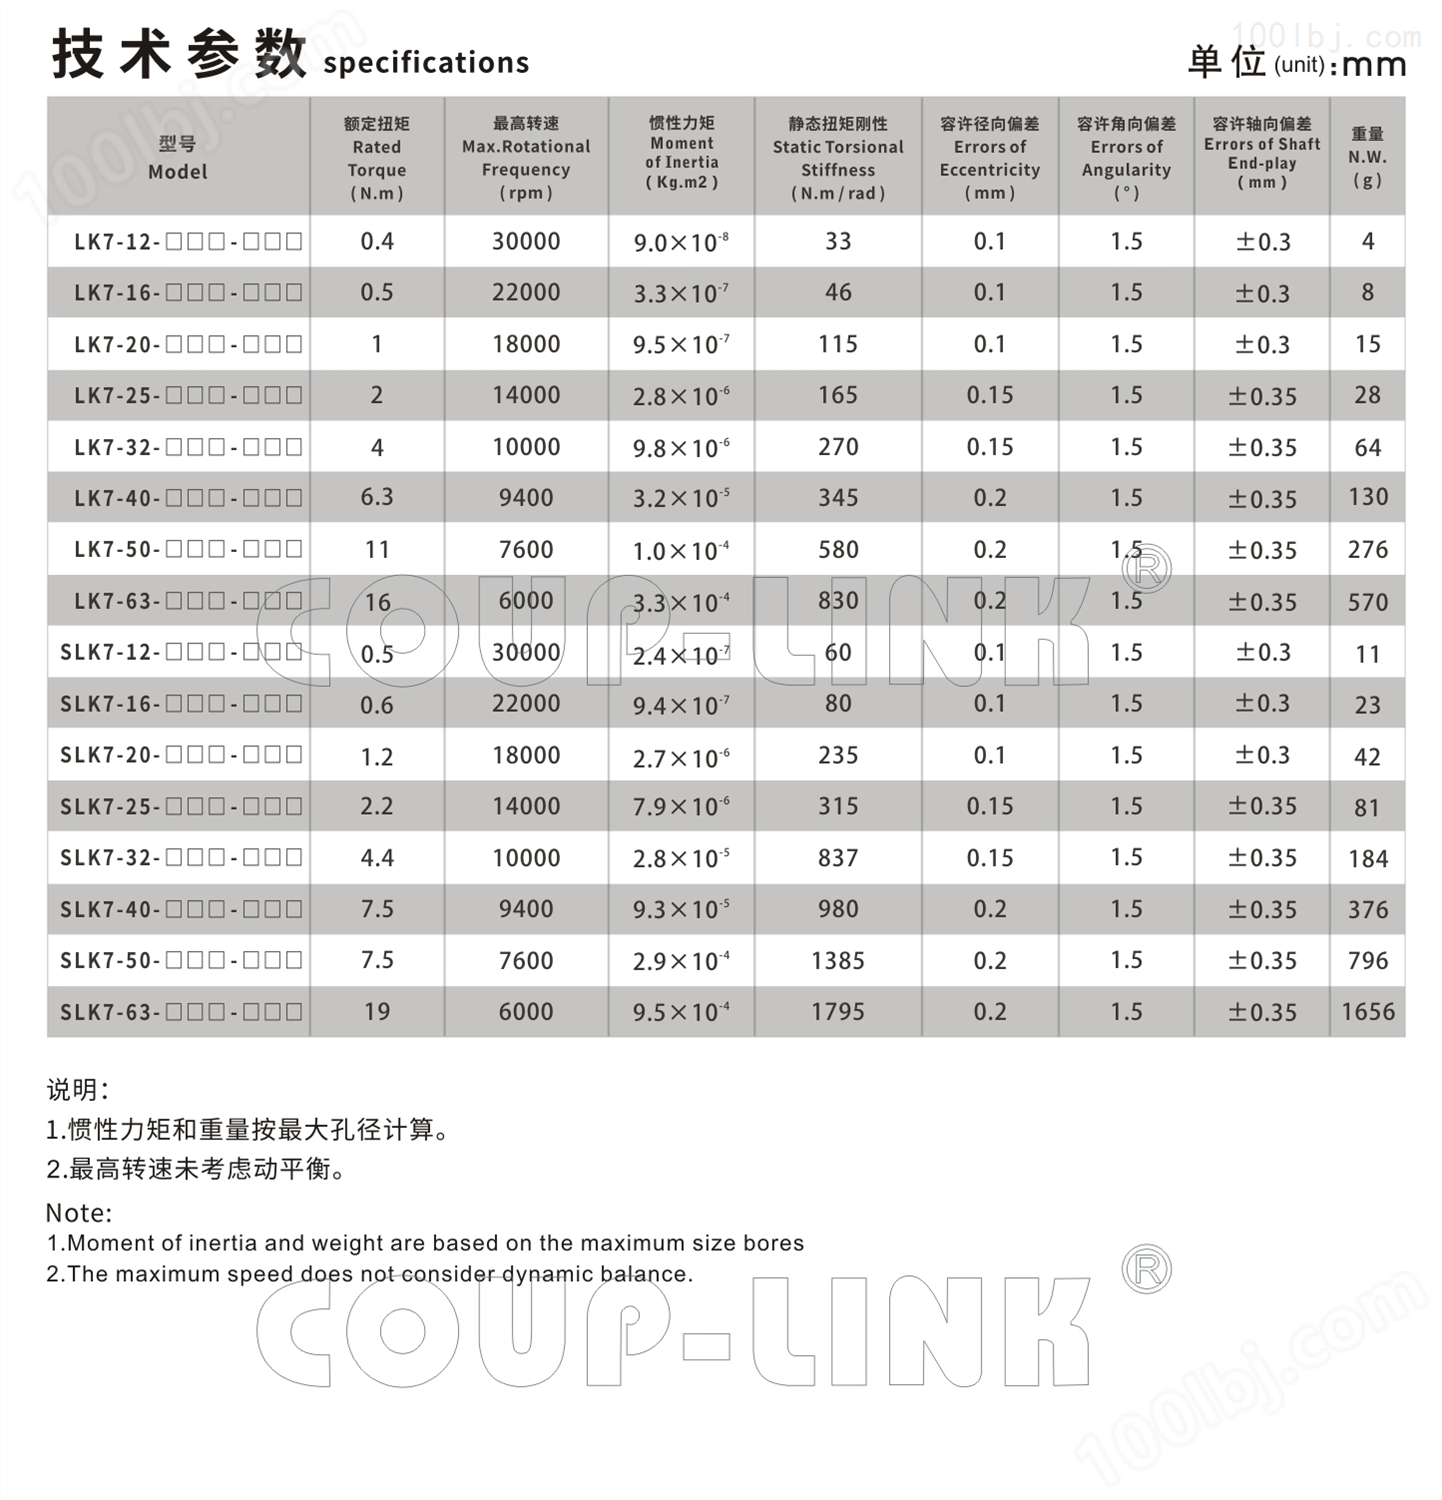 LK7系列 定位螺丝固定平行式_联轴器种类-广州菱科自动化设备有限公司